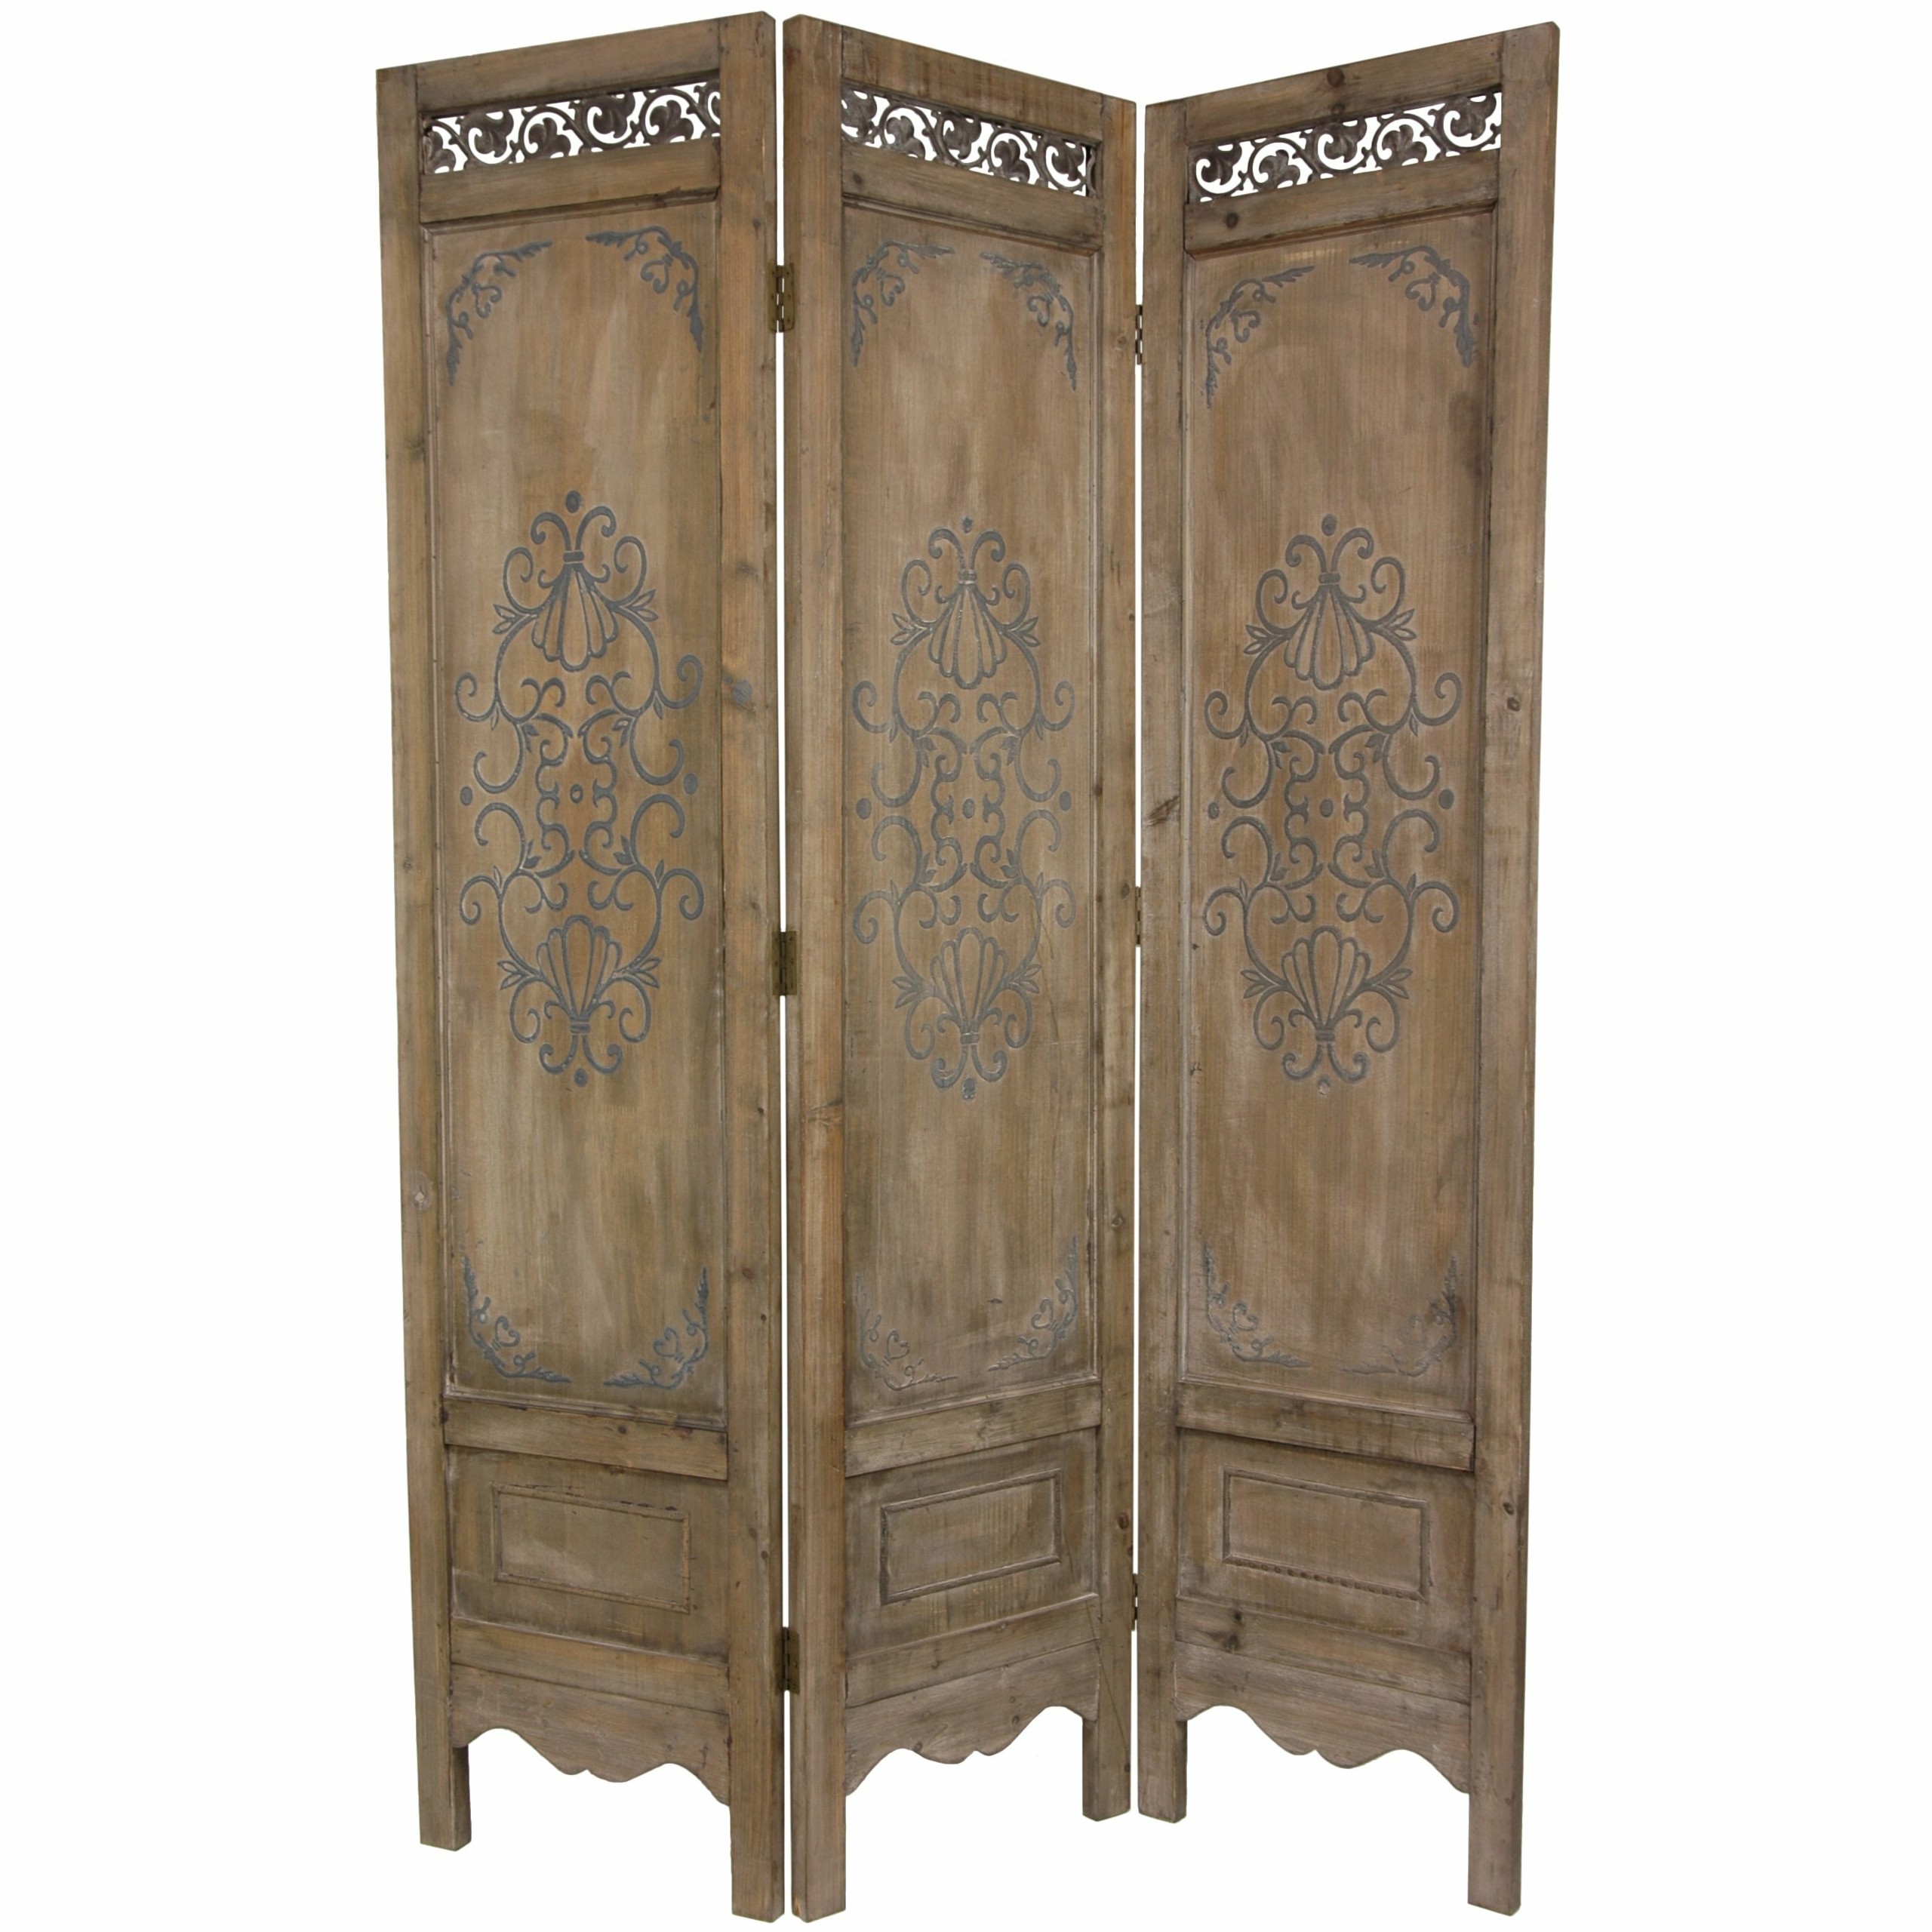 Oriental furniture 72 x 51 antique chest design 3 panel